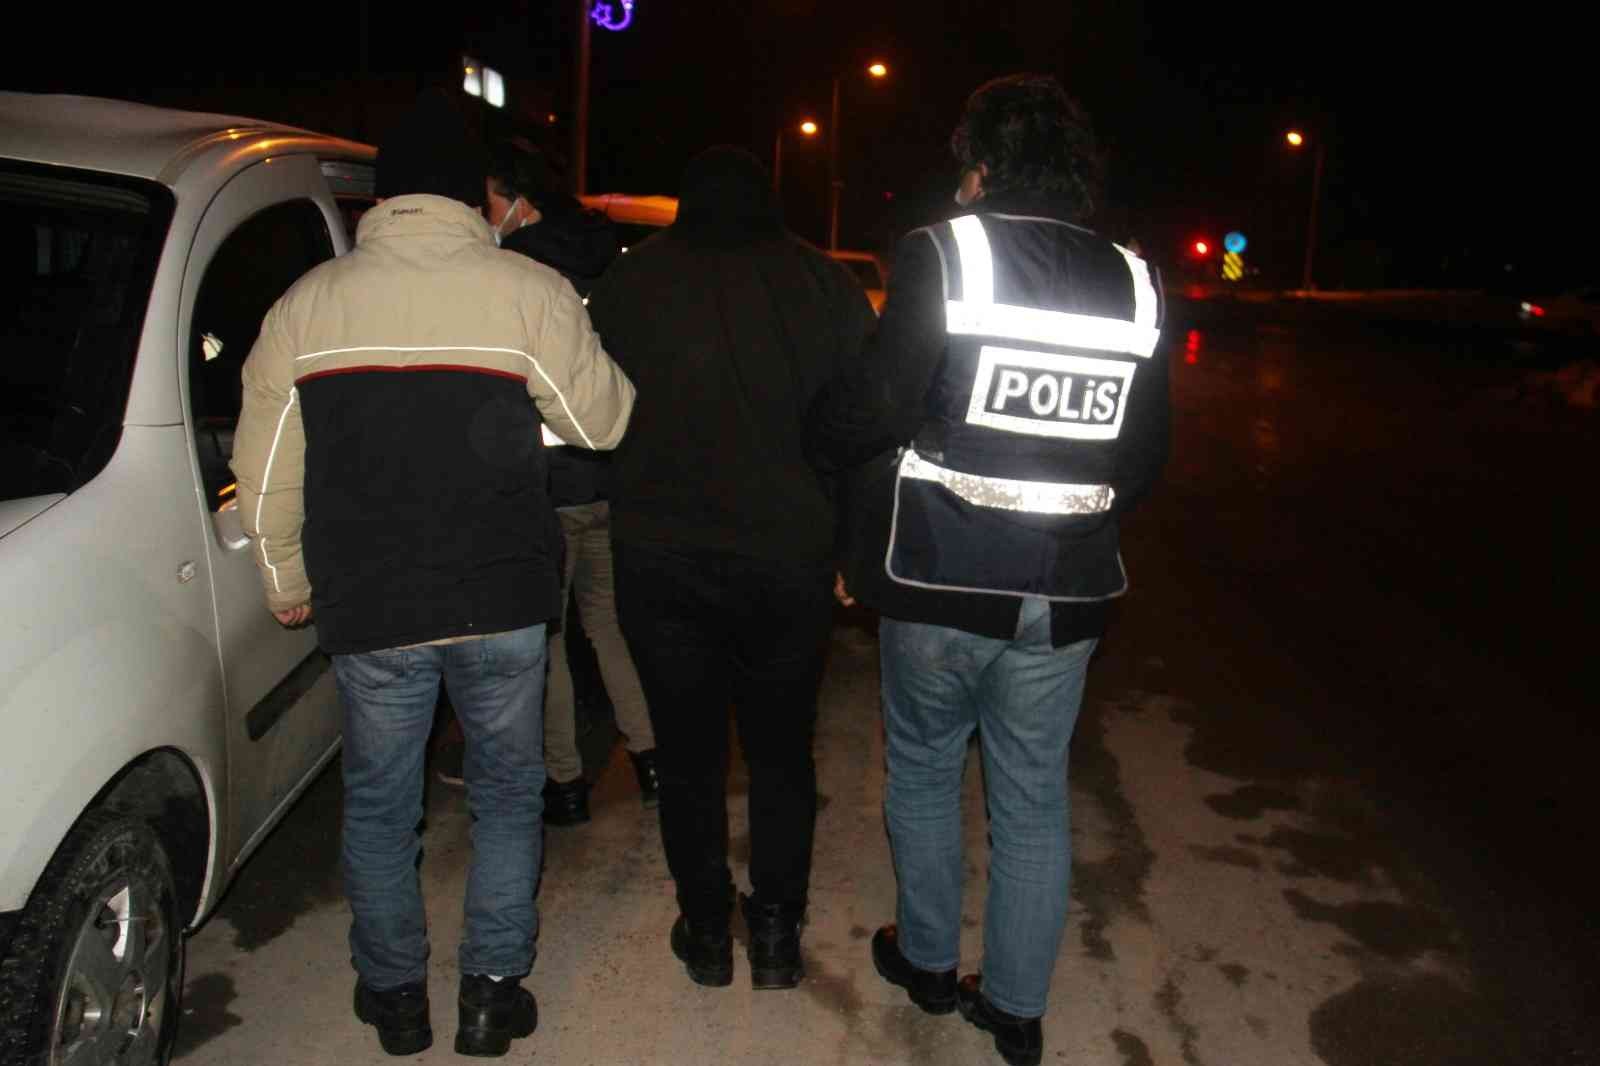 Konya’da inşaattaki hırsızlığın şüphelileri tutuklandı #konya